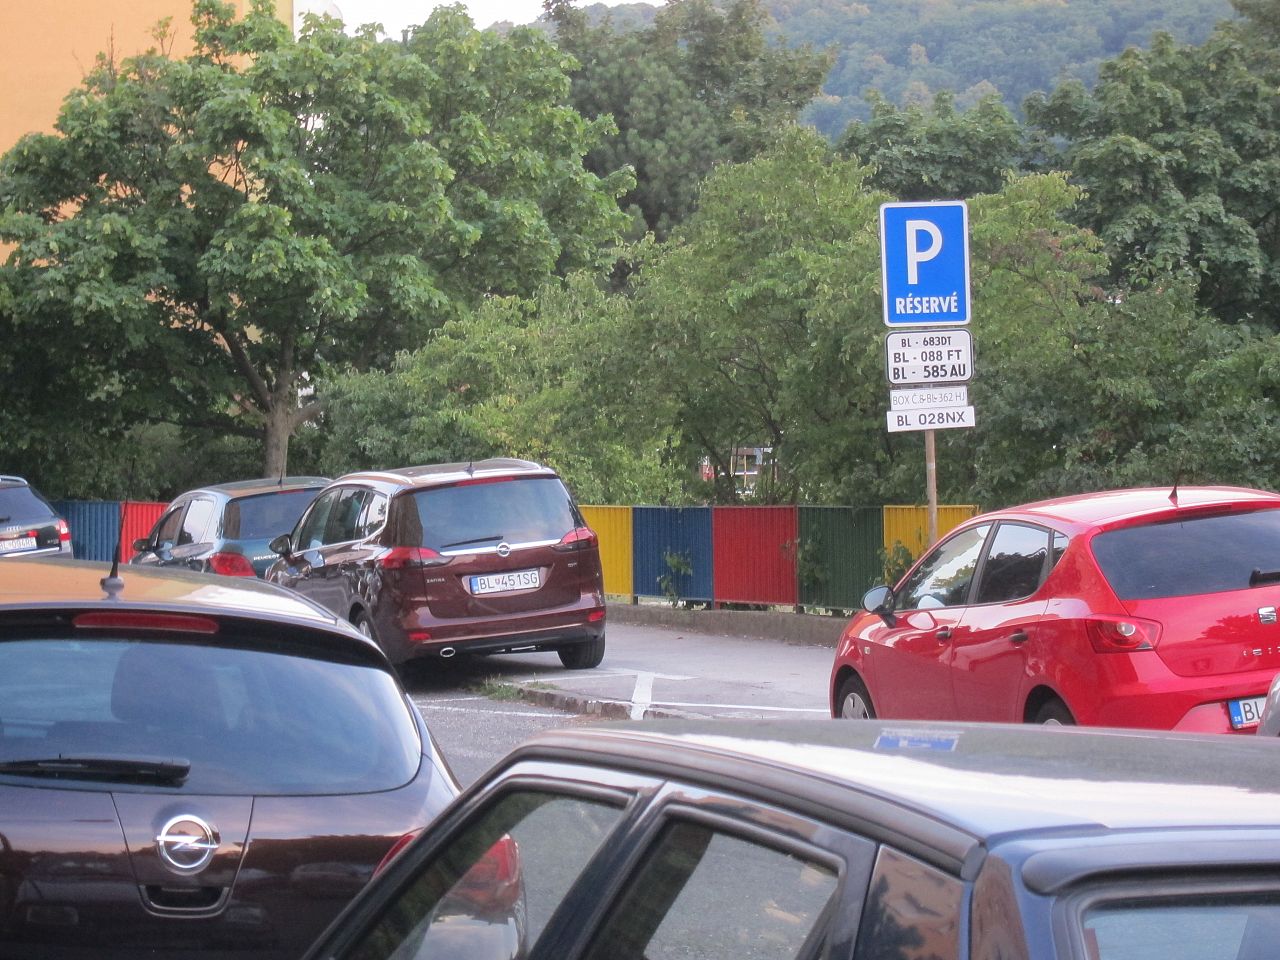 Neaktuálne vyhradené parkovanie, Dúbravka, Bratislava | Odkazprestarostu.sk